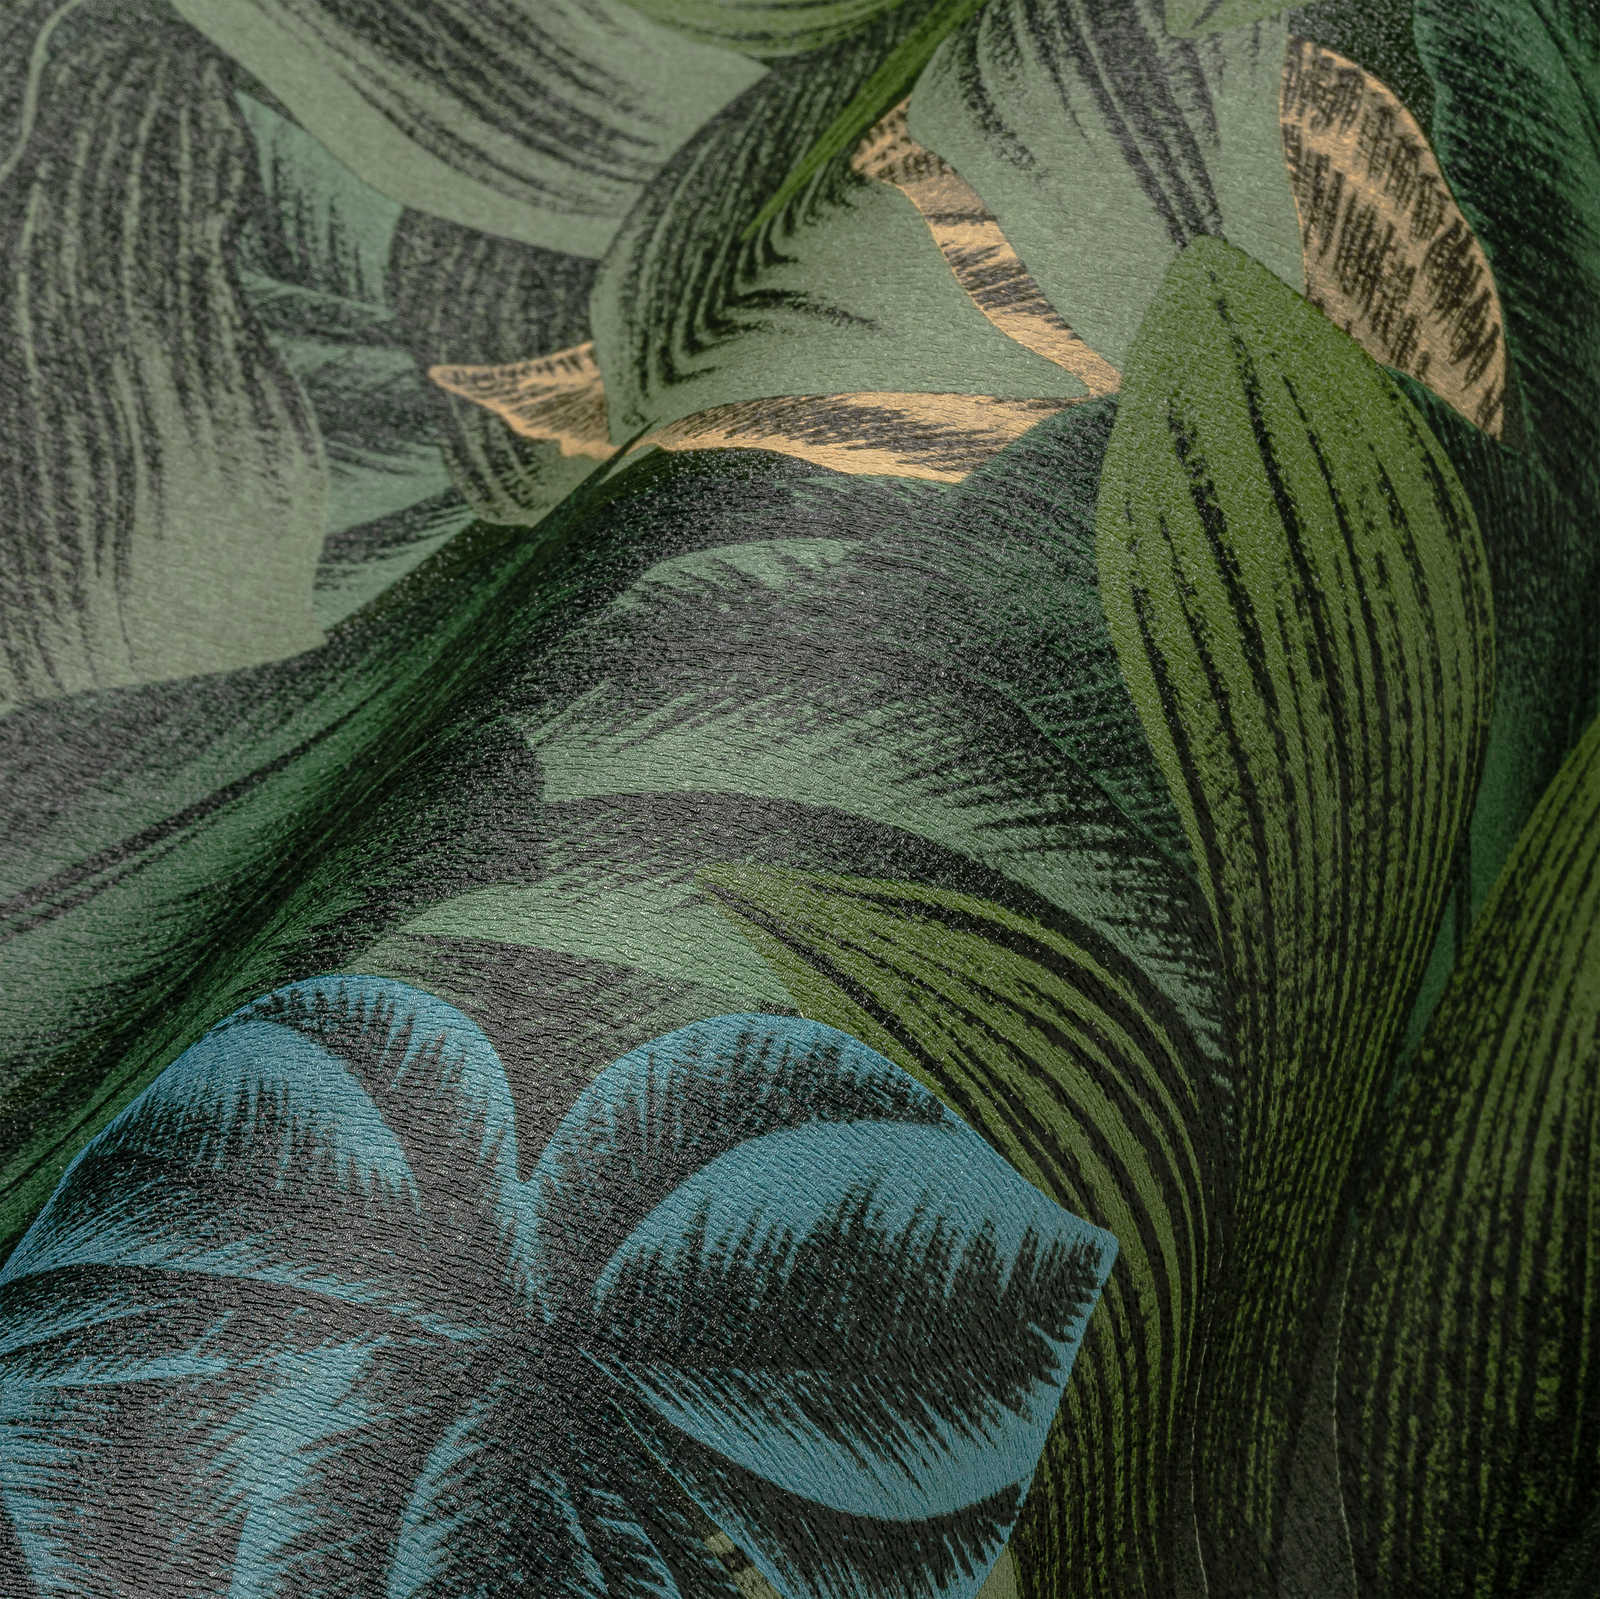             Papel pintado Selva con hojas tropicales - verde, amarillo
        